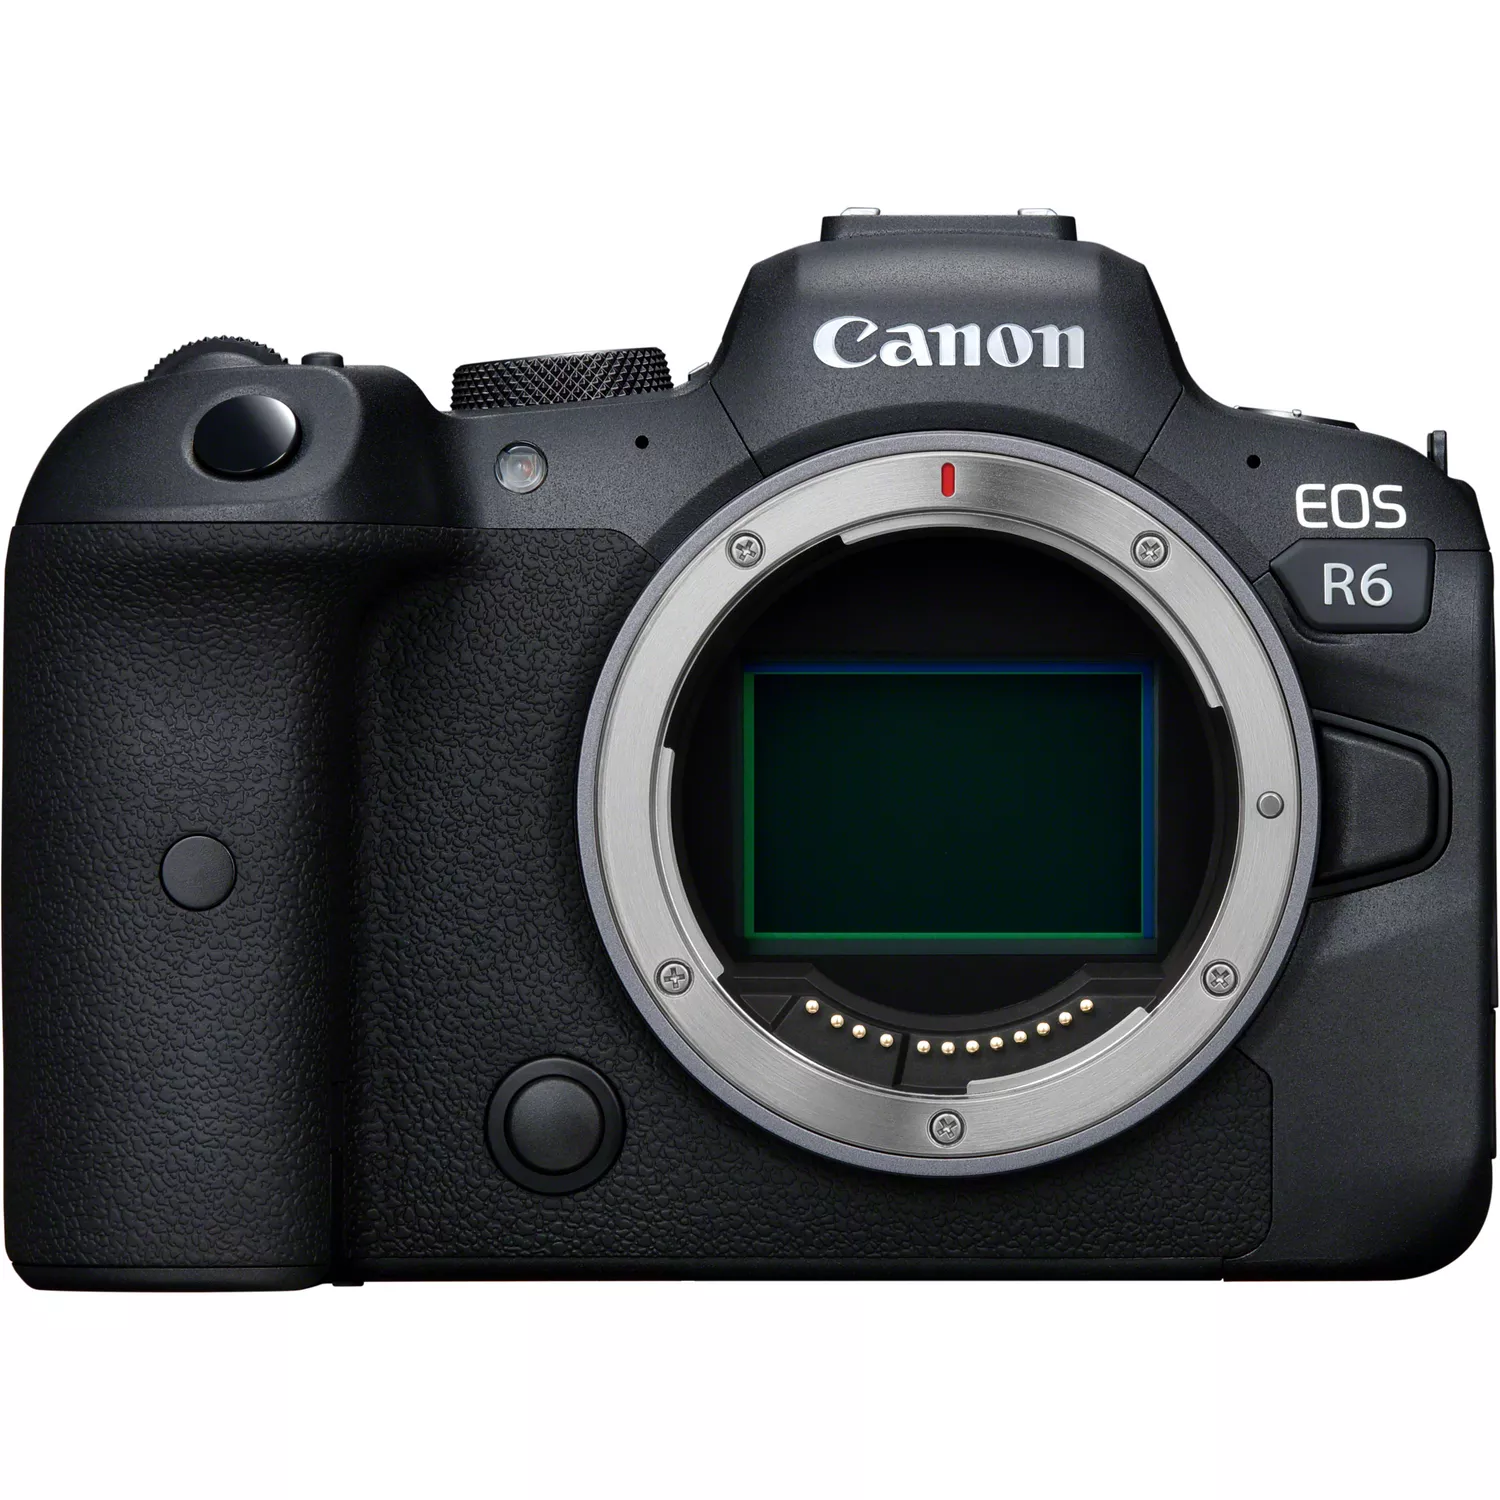 Canon EOS r6 camera